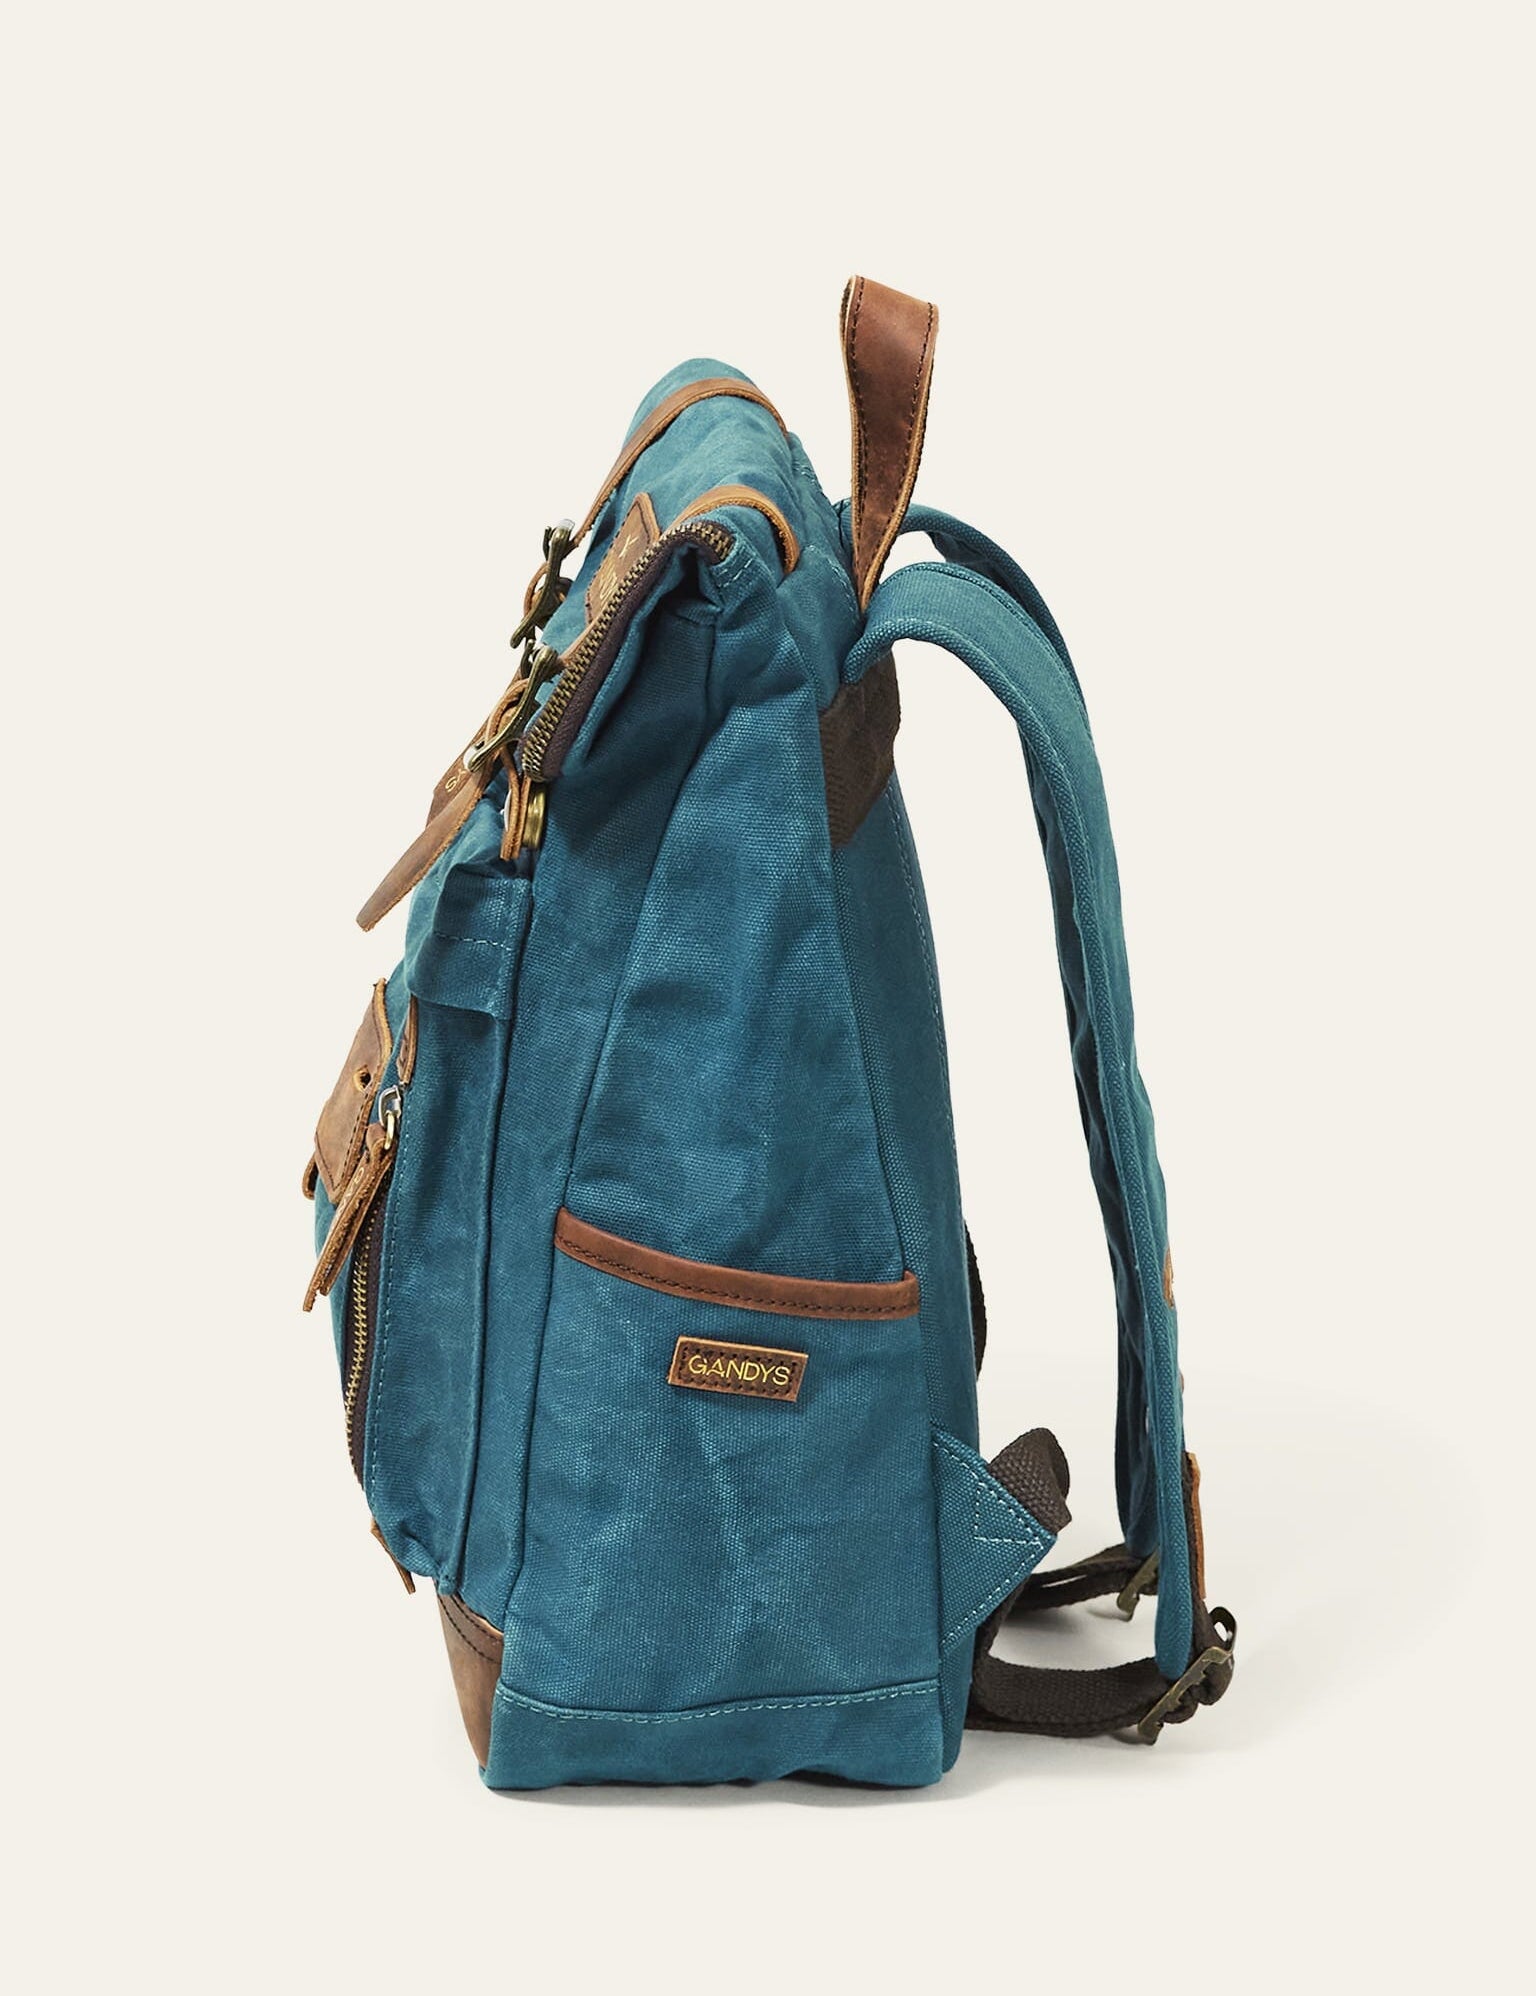 teal-waxed-authentic-mini-bali-backpack-748486.jpg